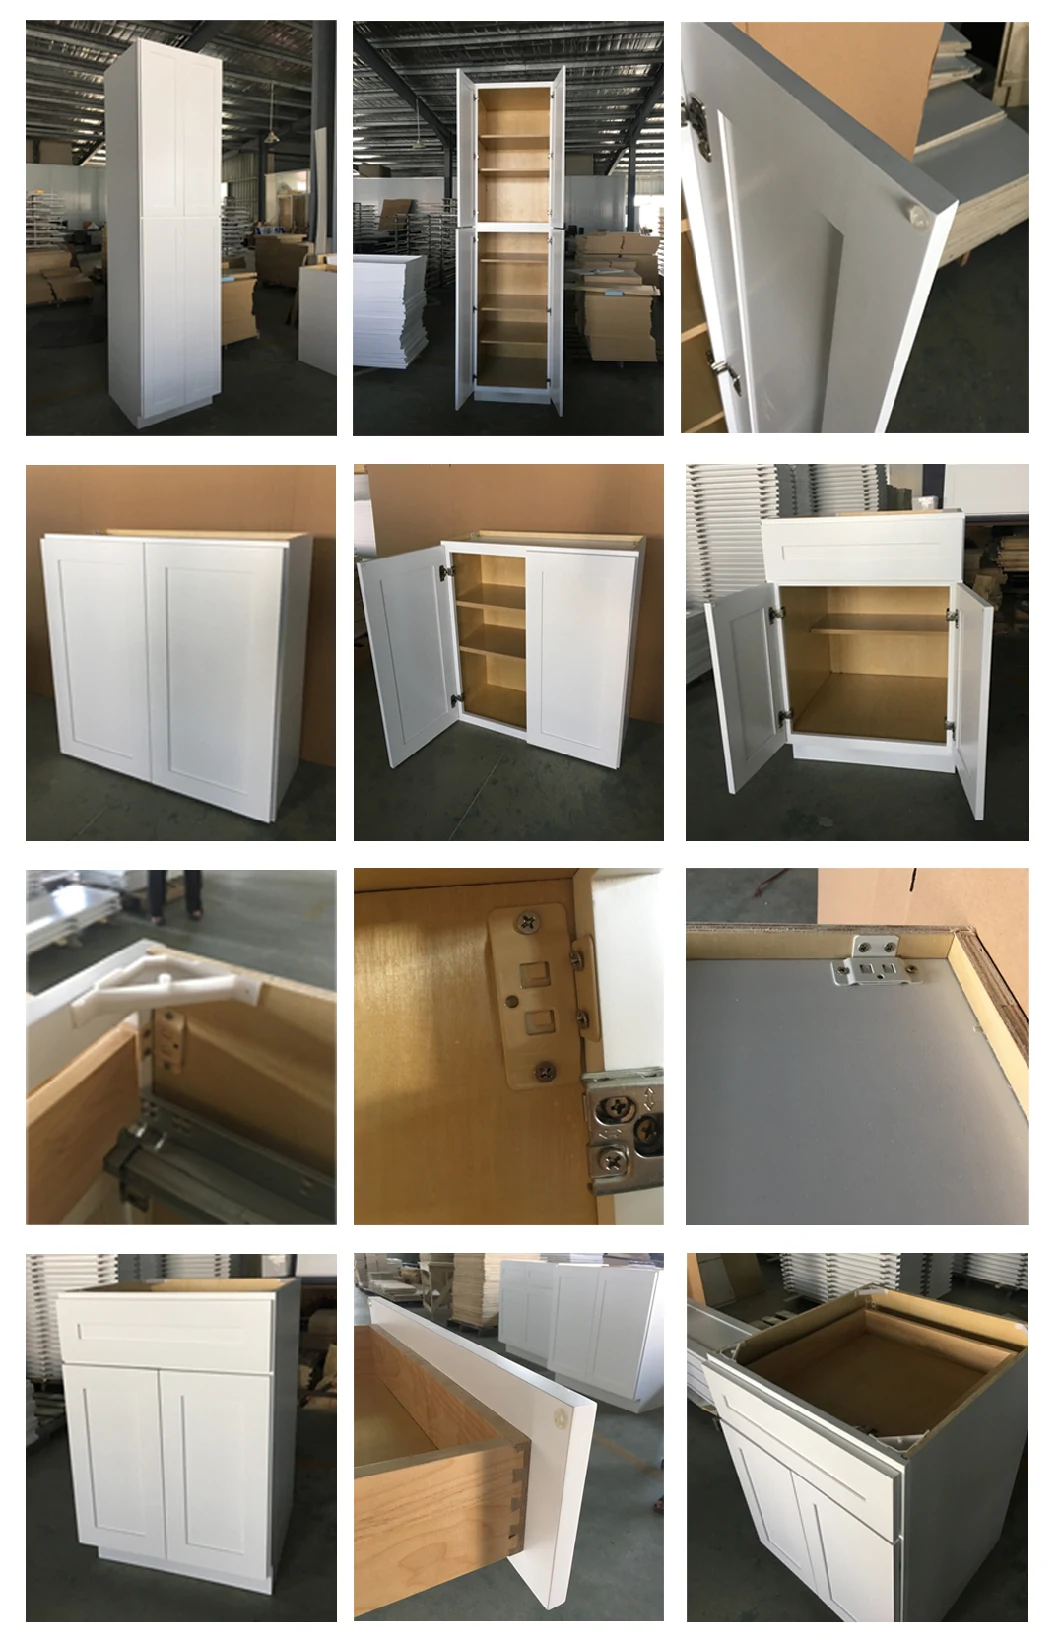 Design Compact Kitchen Units Modern Kitchen Cabinet Furniture Supplier